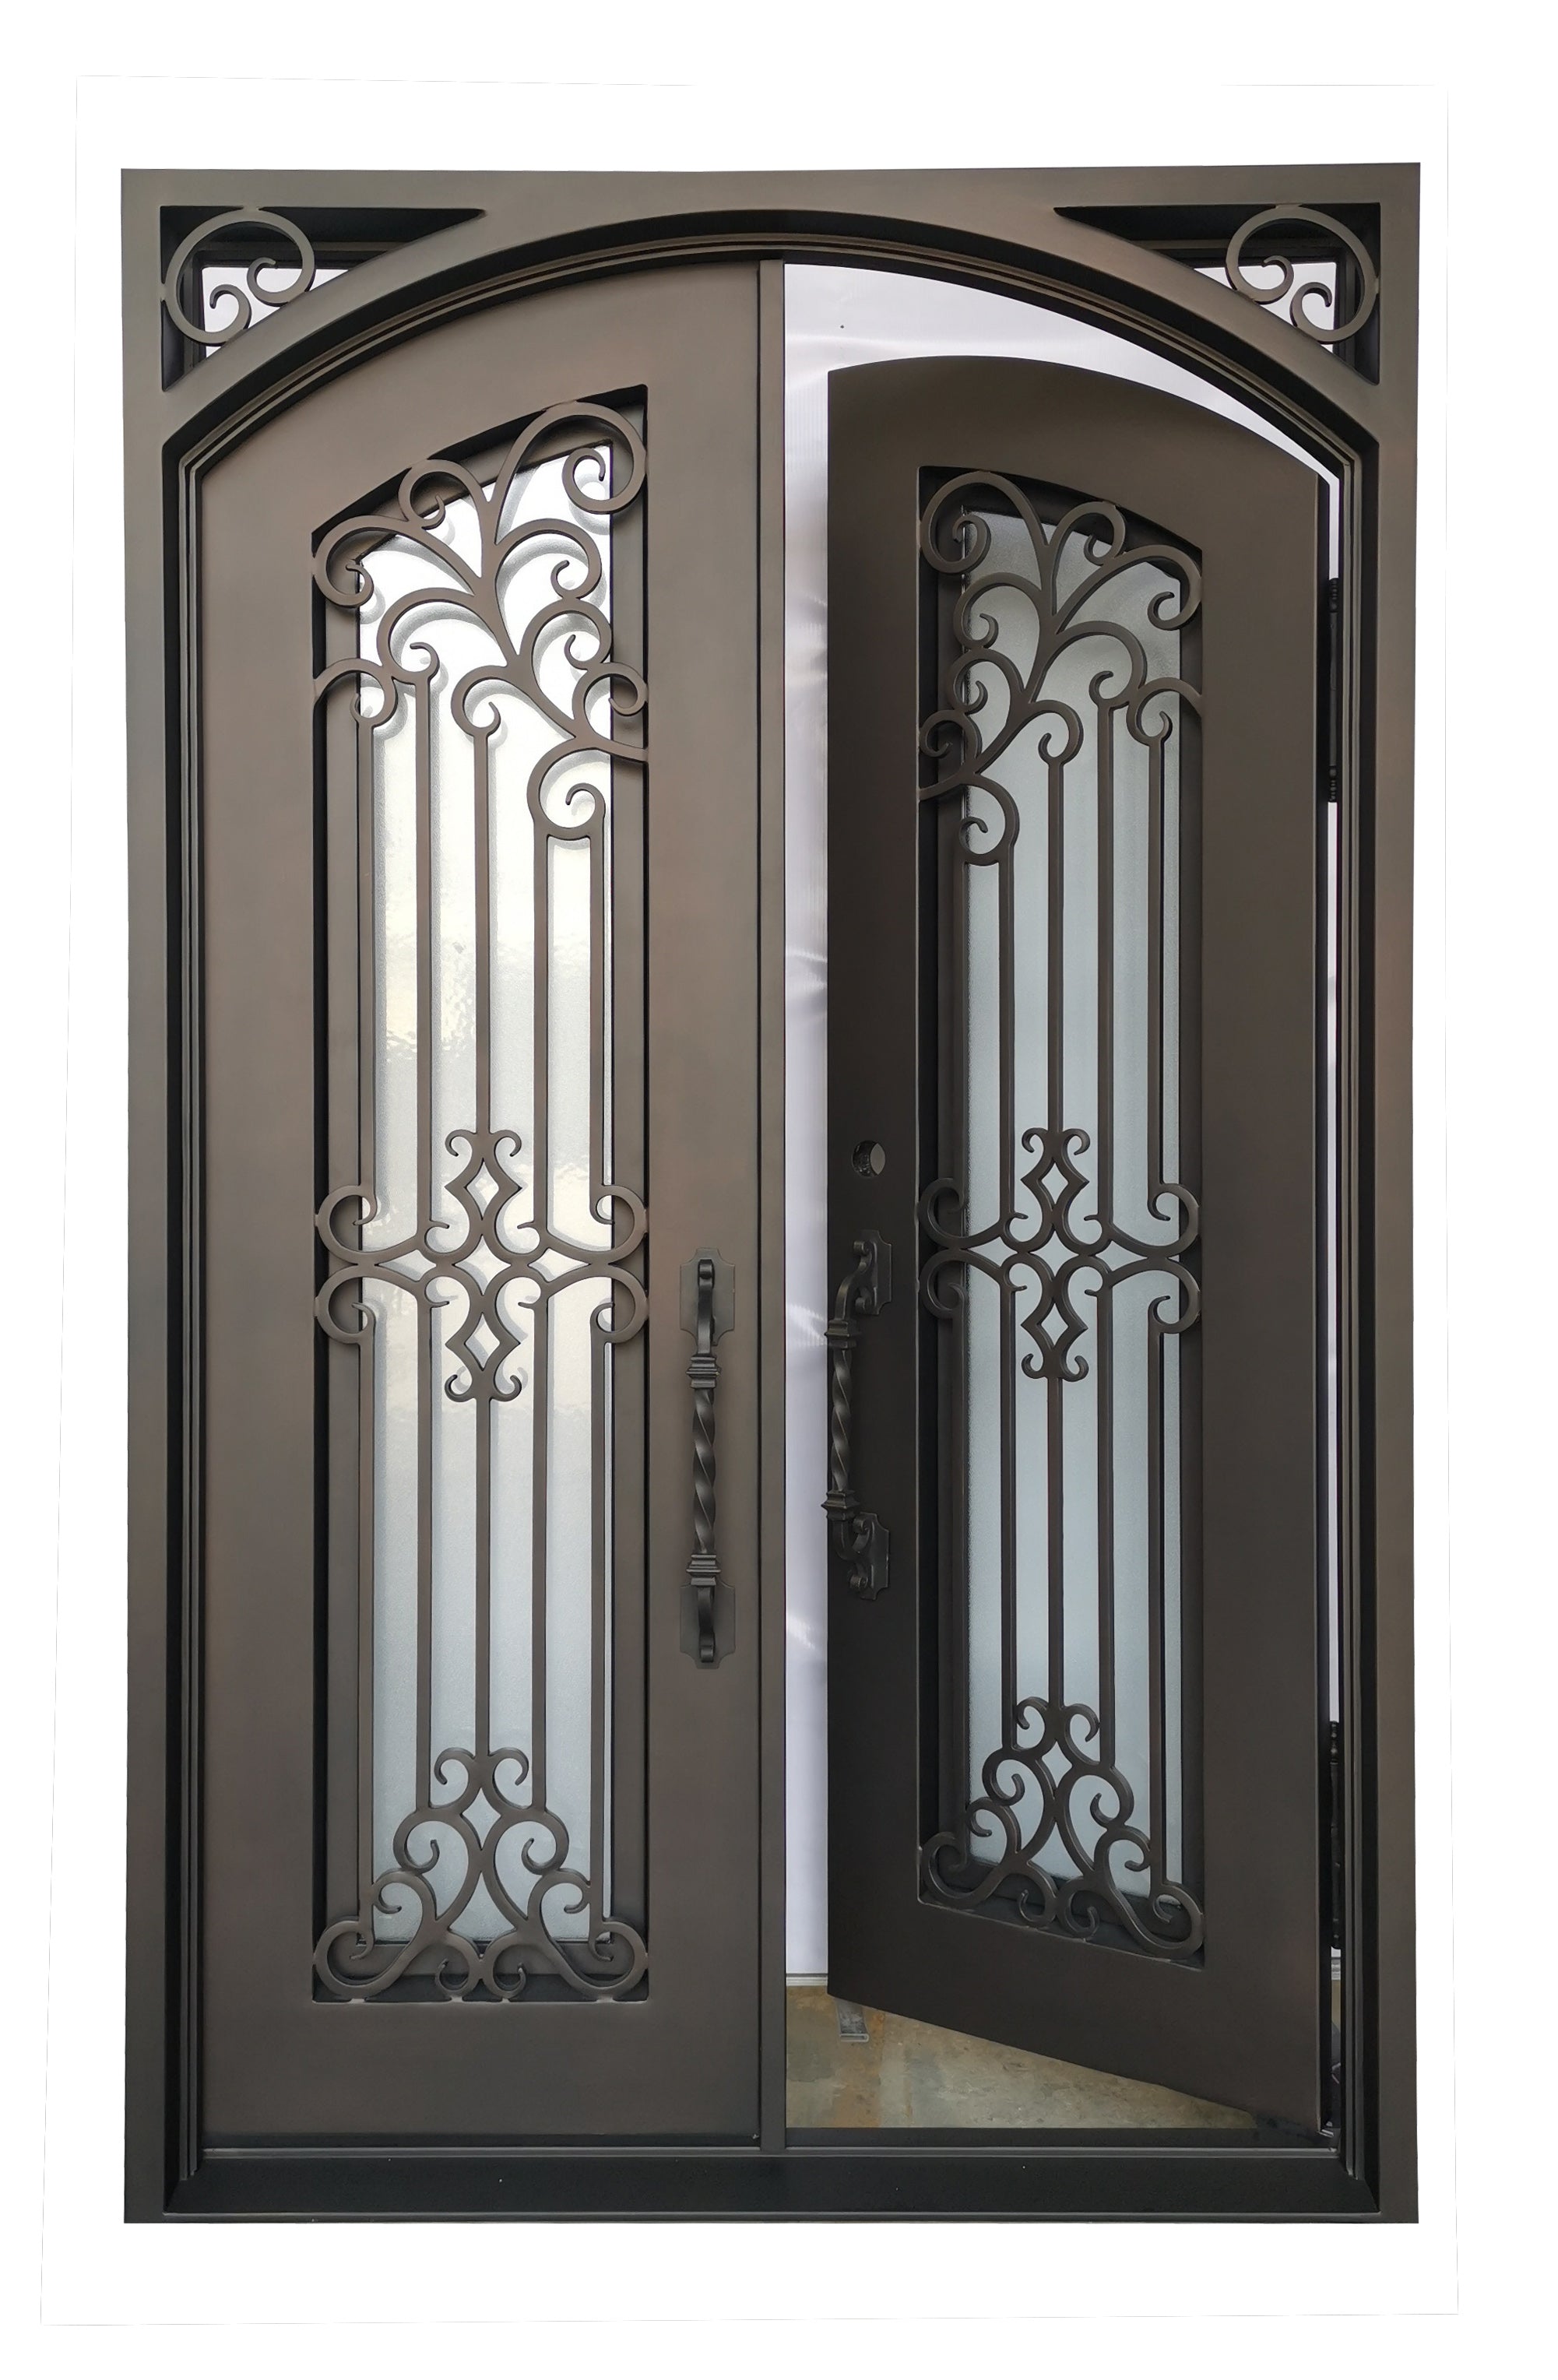 Hidalgo Model Double Front Entry Iron Door With Tempered Aqua Lite Glass Dark Bronze Finish - AAWAIZ IMPORTS